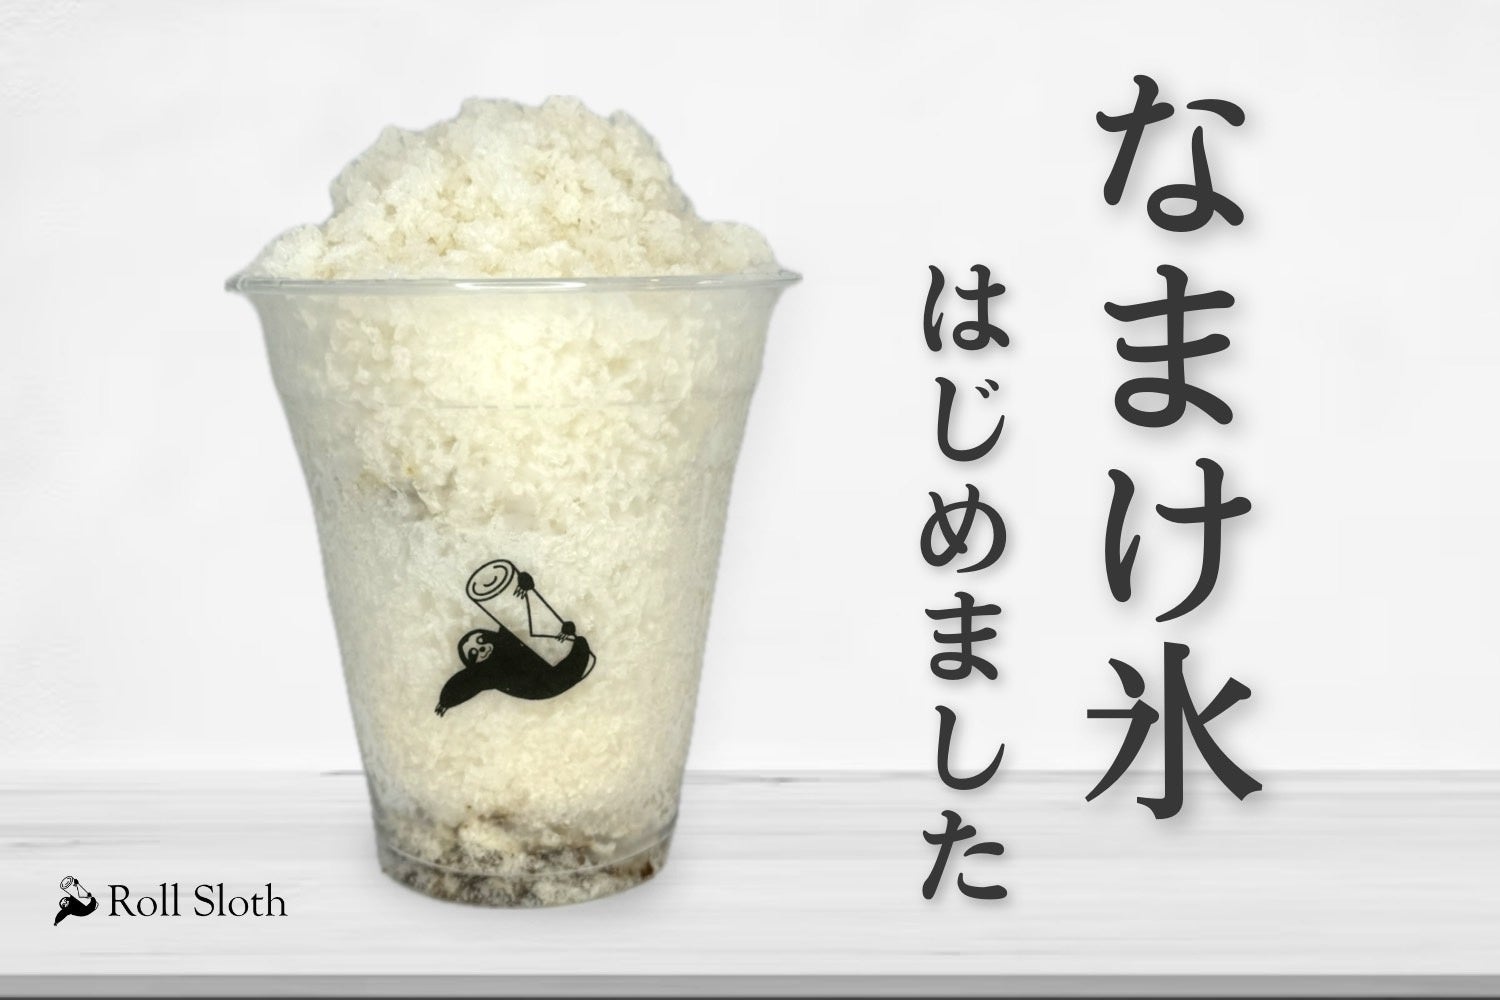 下北沢の才能発信型飲食店 「Roll Sloth🦥」夏にぴったりのかき氷を販売